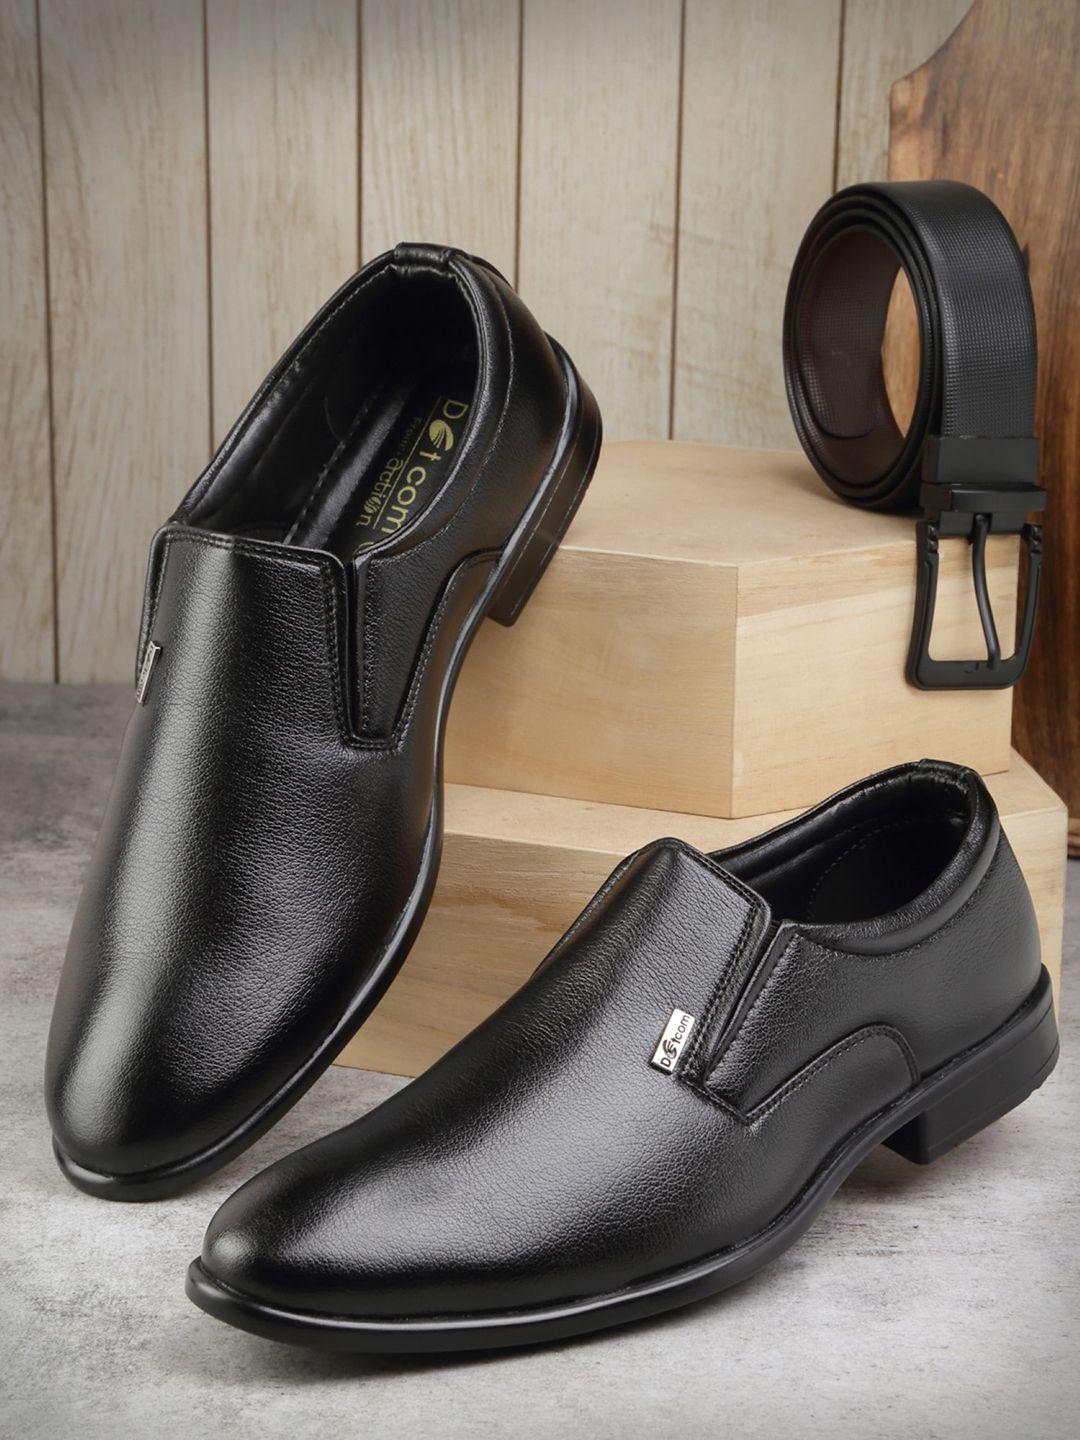 action-men-textured-comfort-fit-formal-slip-on-shoes